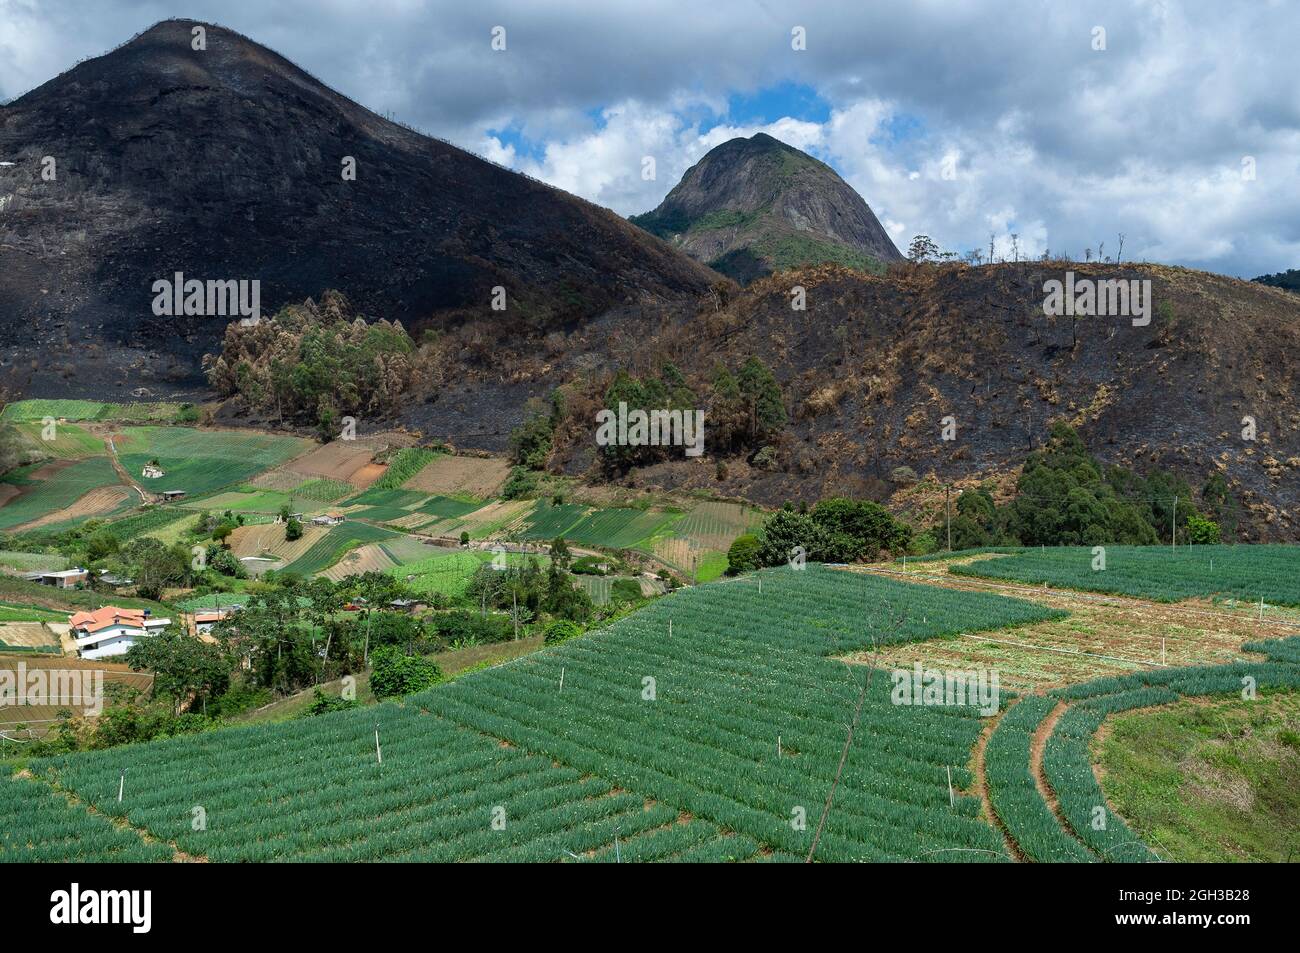 L'agricoltura di Slash e Burn usata nelle piccole aziende agricole per la produzione di ortaggi - terra recentemente bruciata sullo sfondo e varie piantagioni in primo piano. Foto Stock